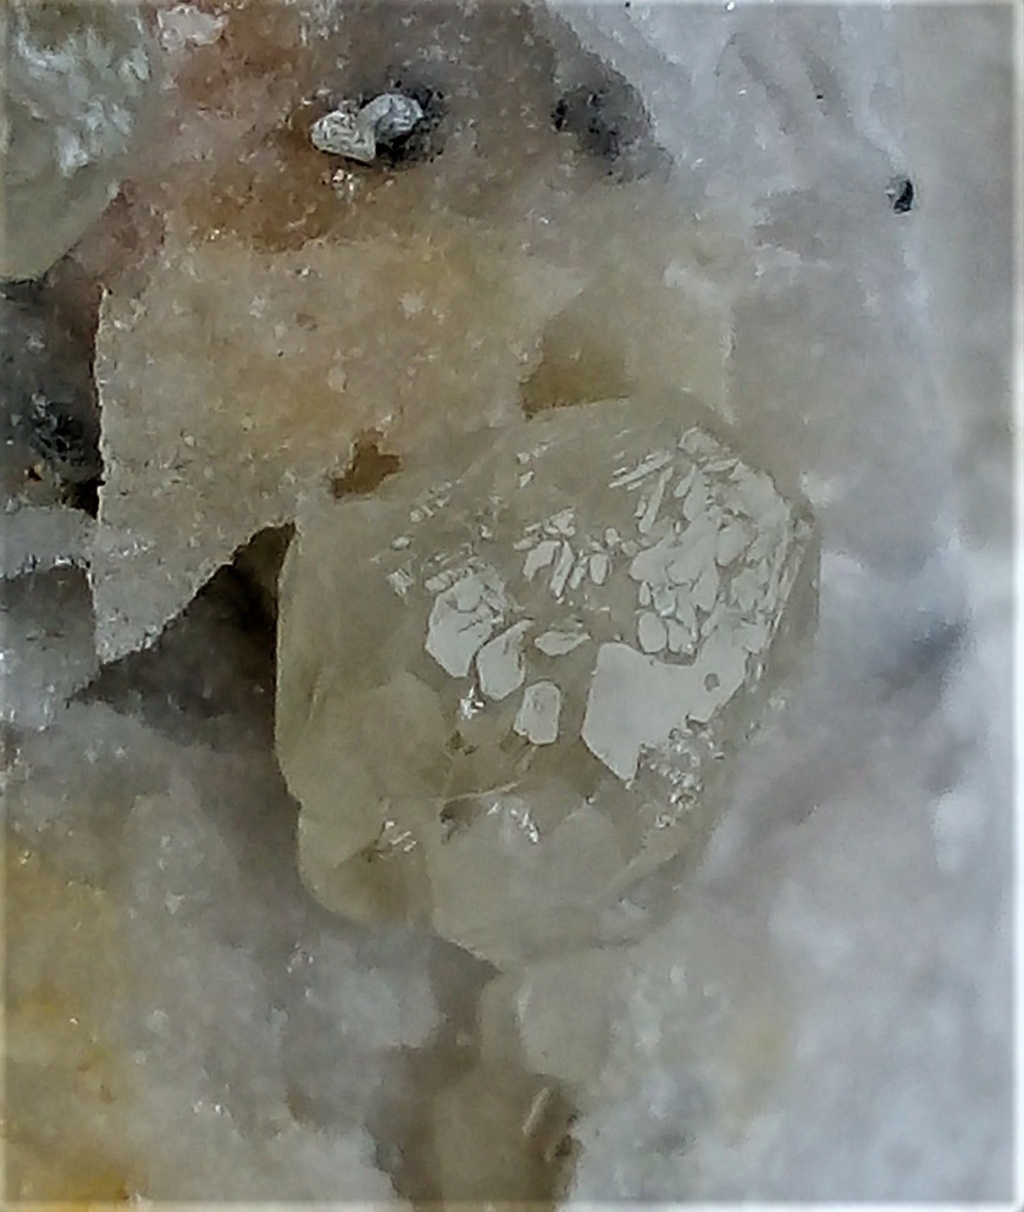 Minéraux de la mine CLARA autres que la Fluorite et la barite - Page 4 Img_2953